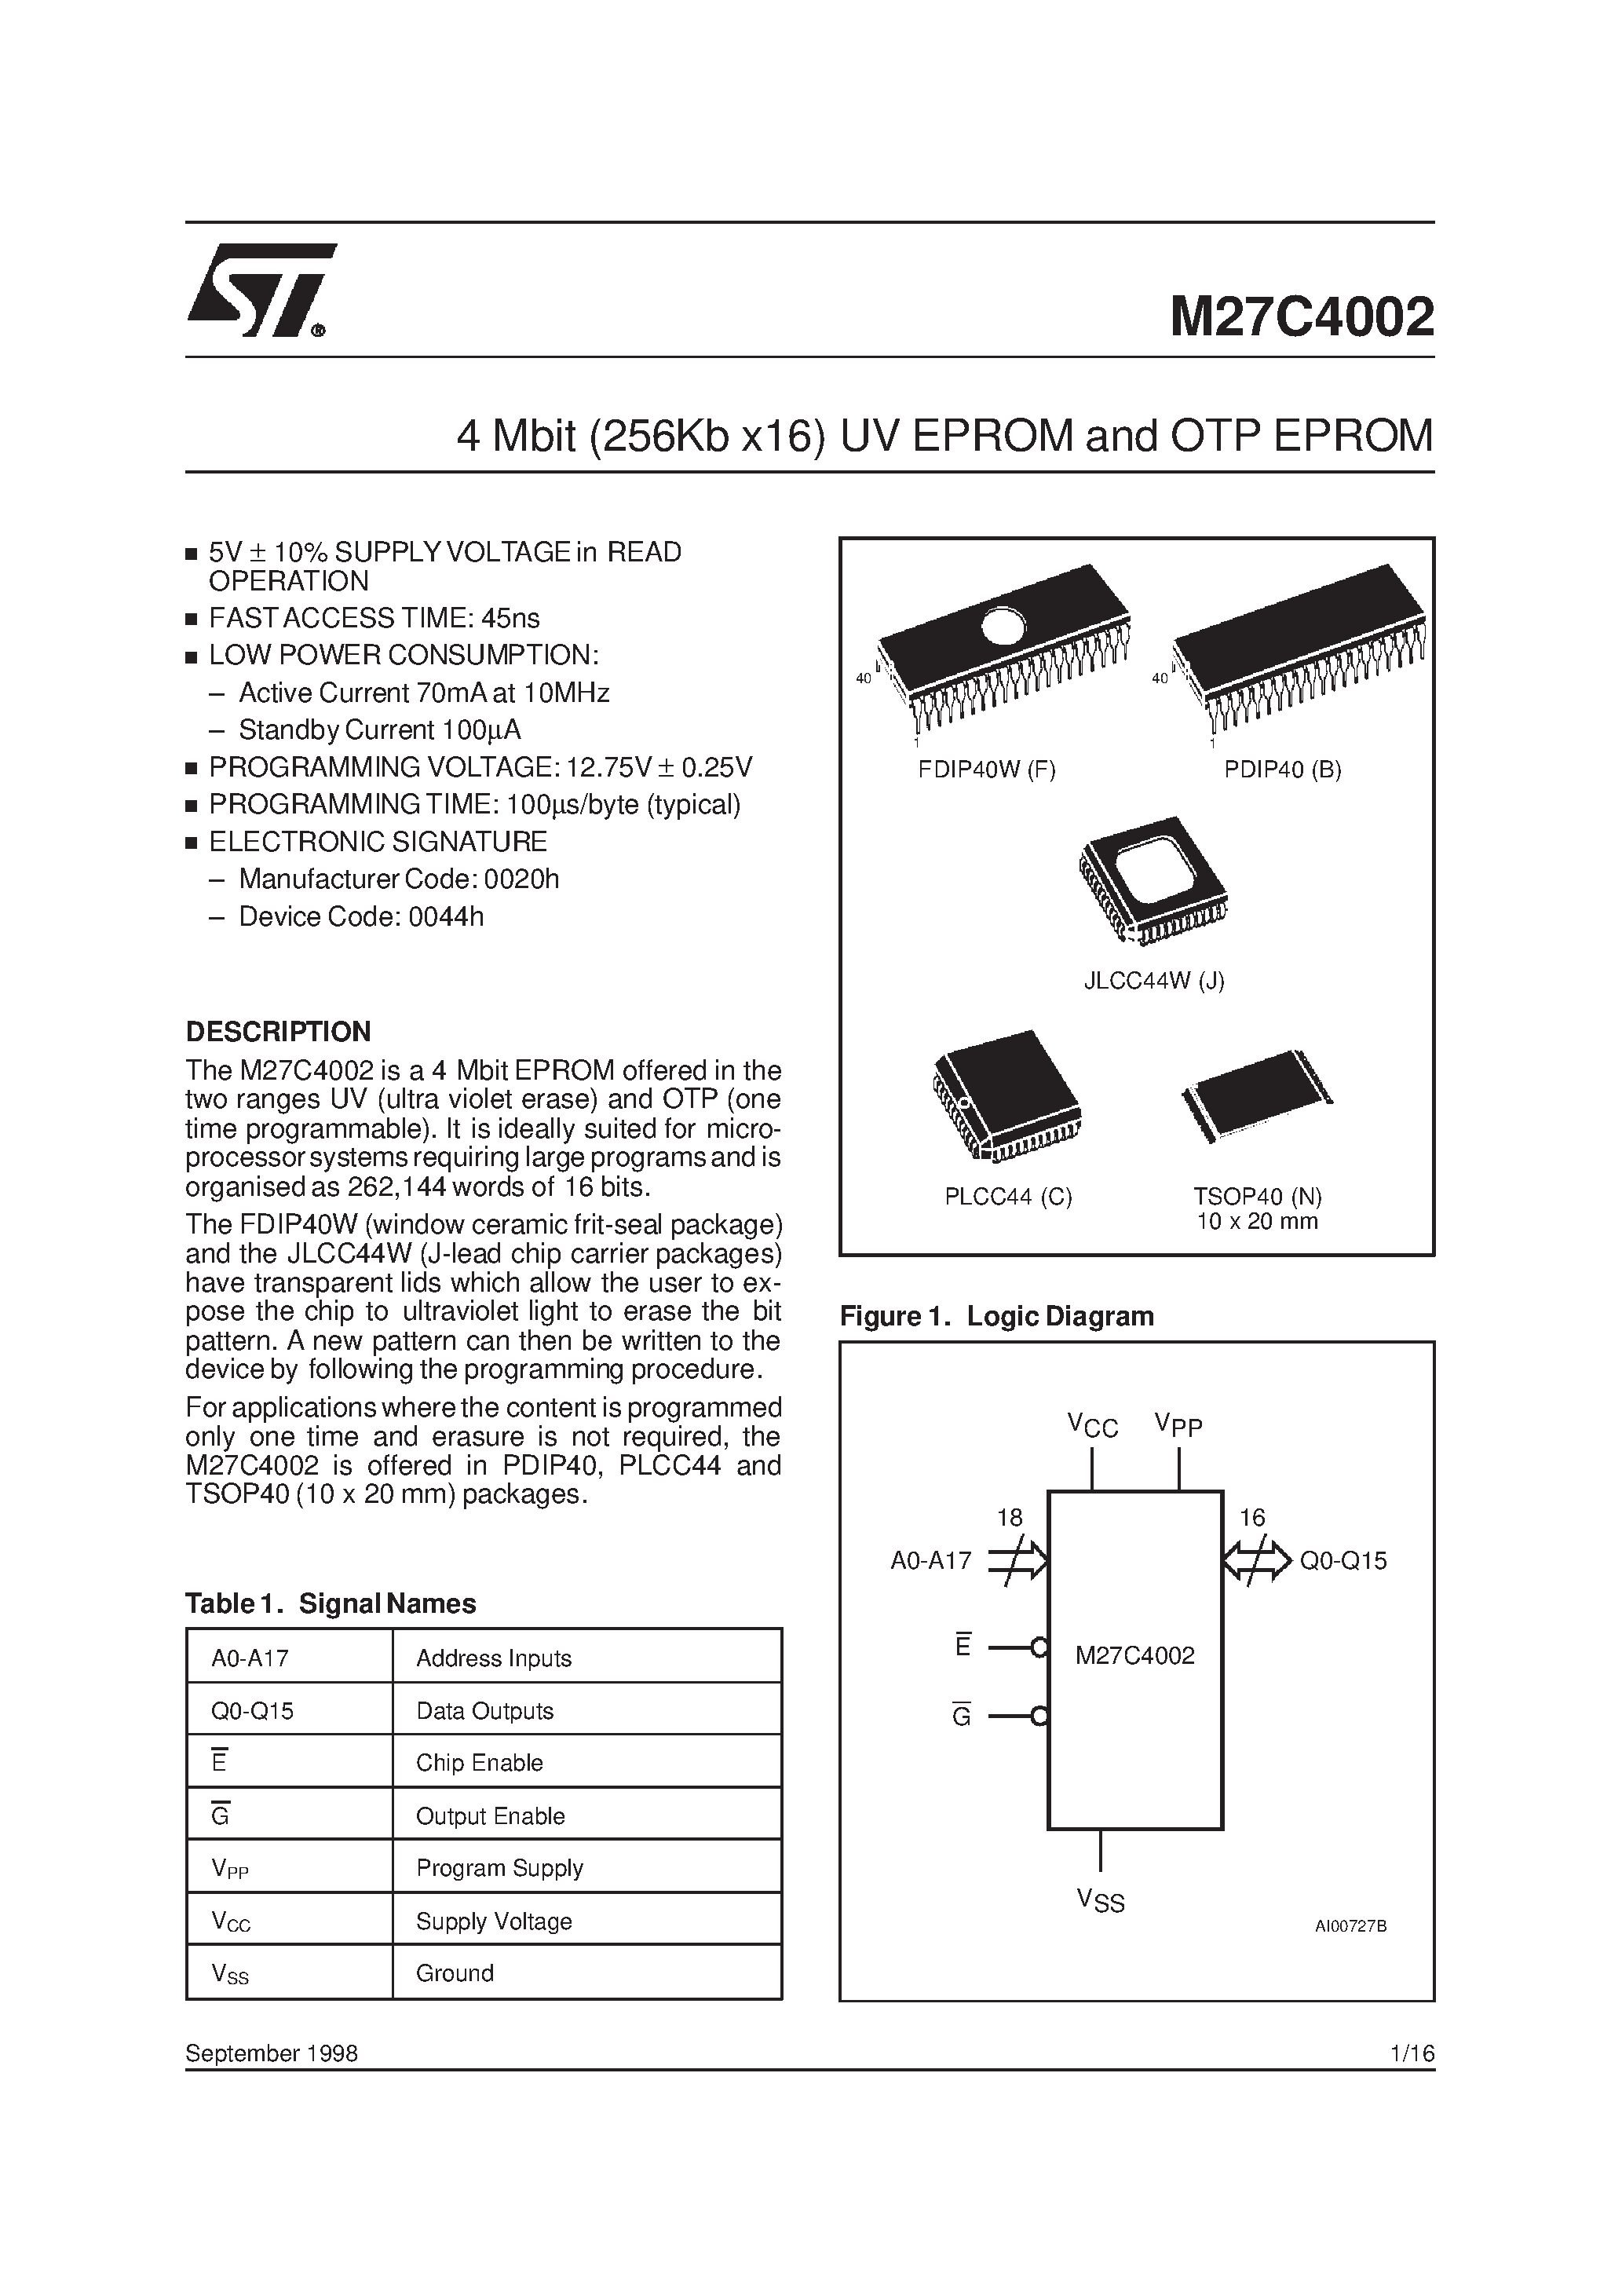 Datasheet M27C4002-12C1TR - 4 Mbit 256Kb x16 UV EPROM and OTP EPROM page 1